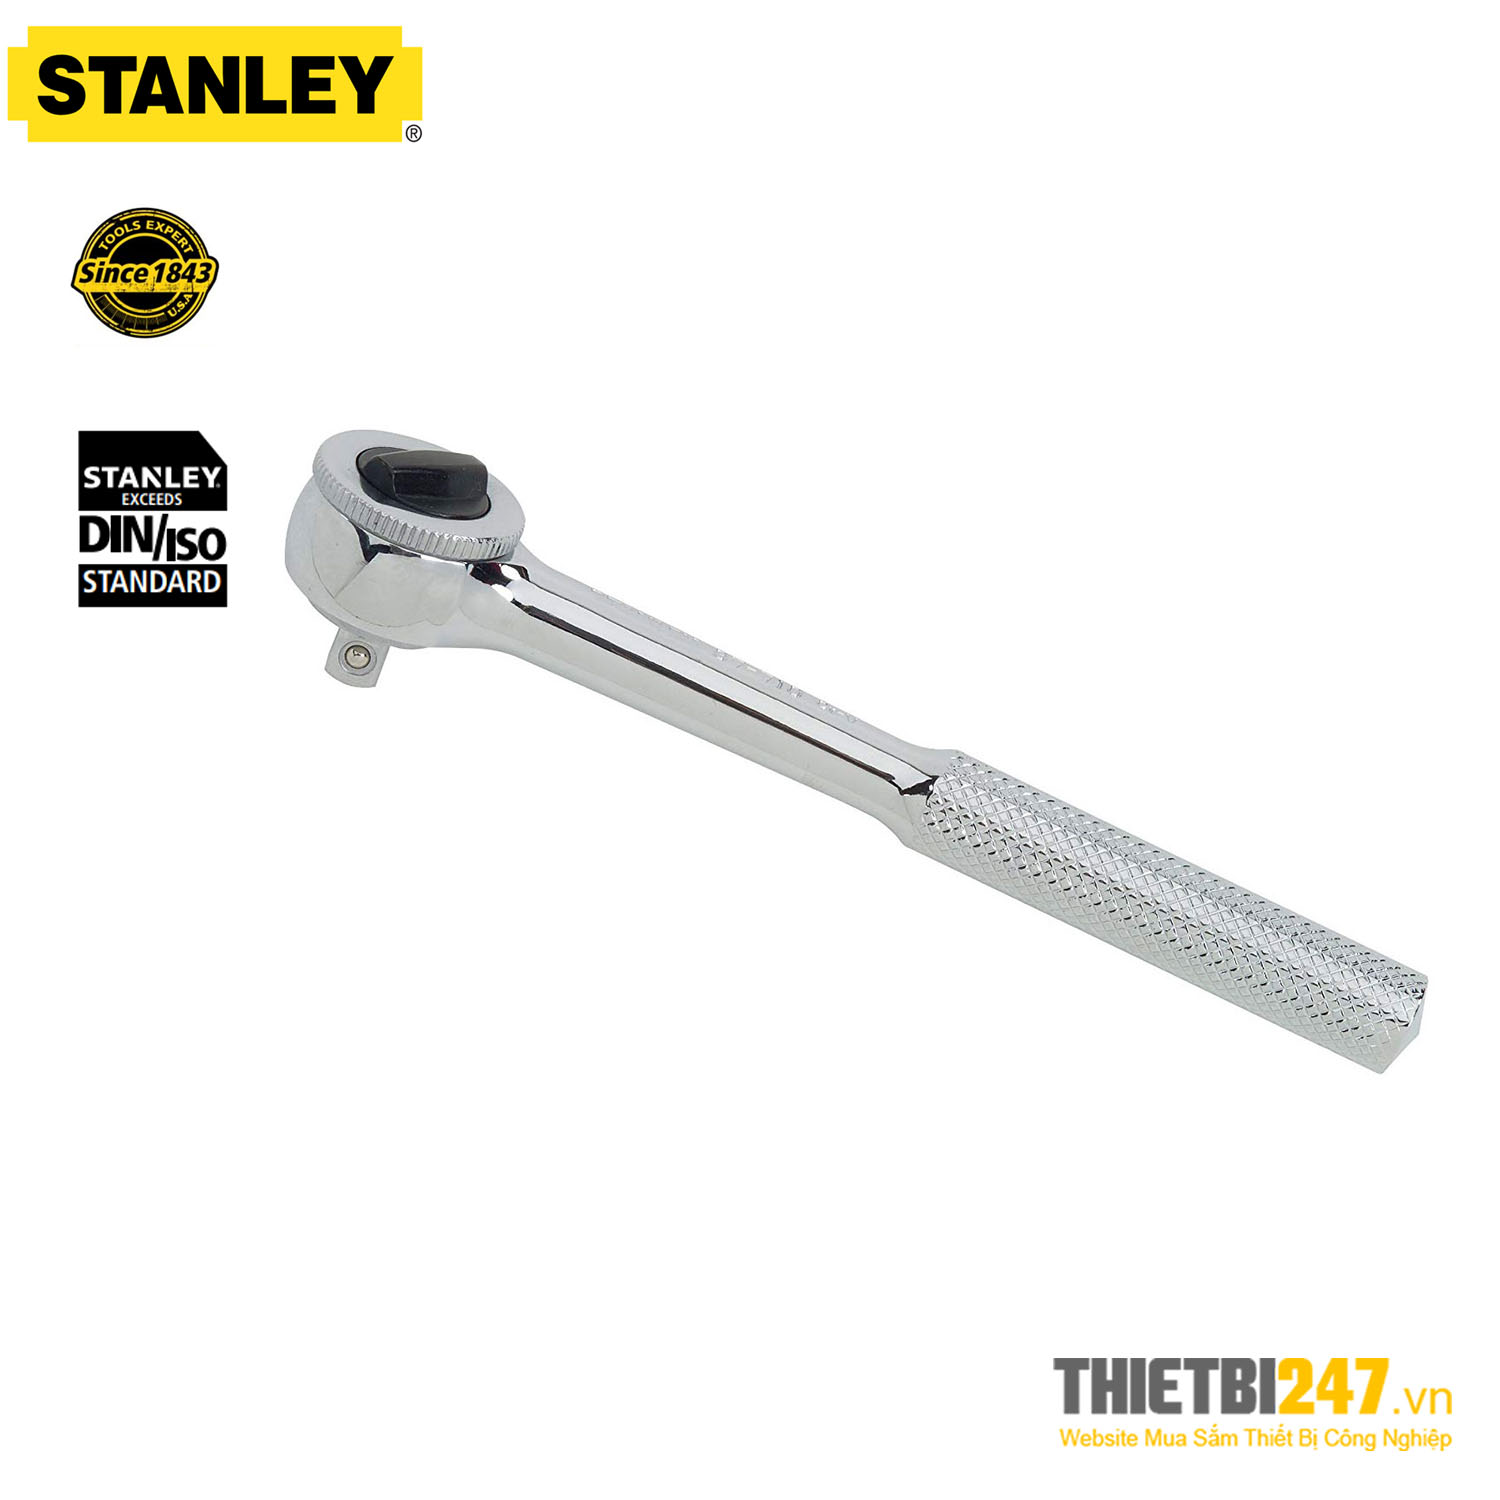 Cần vặn tuýp tự động 1/2" L256mm Stanley 87-720-1